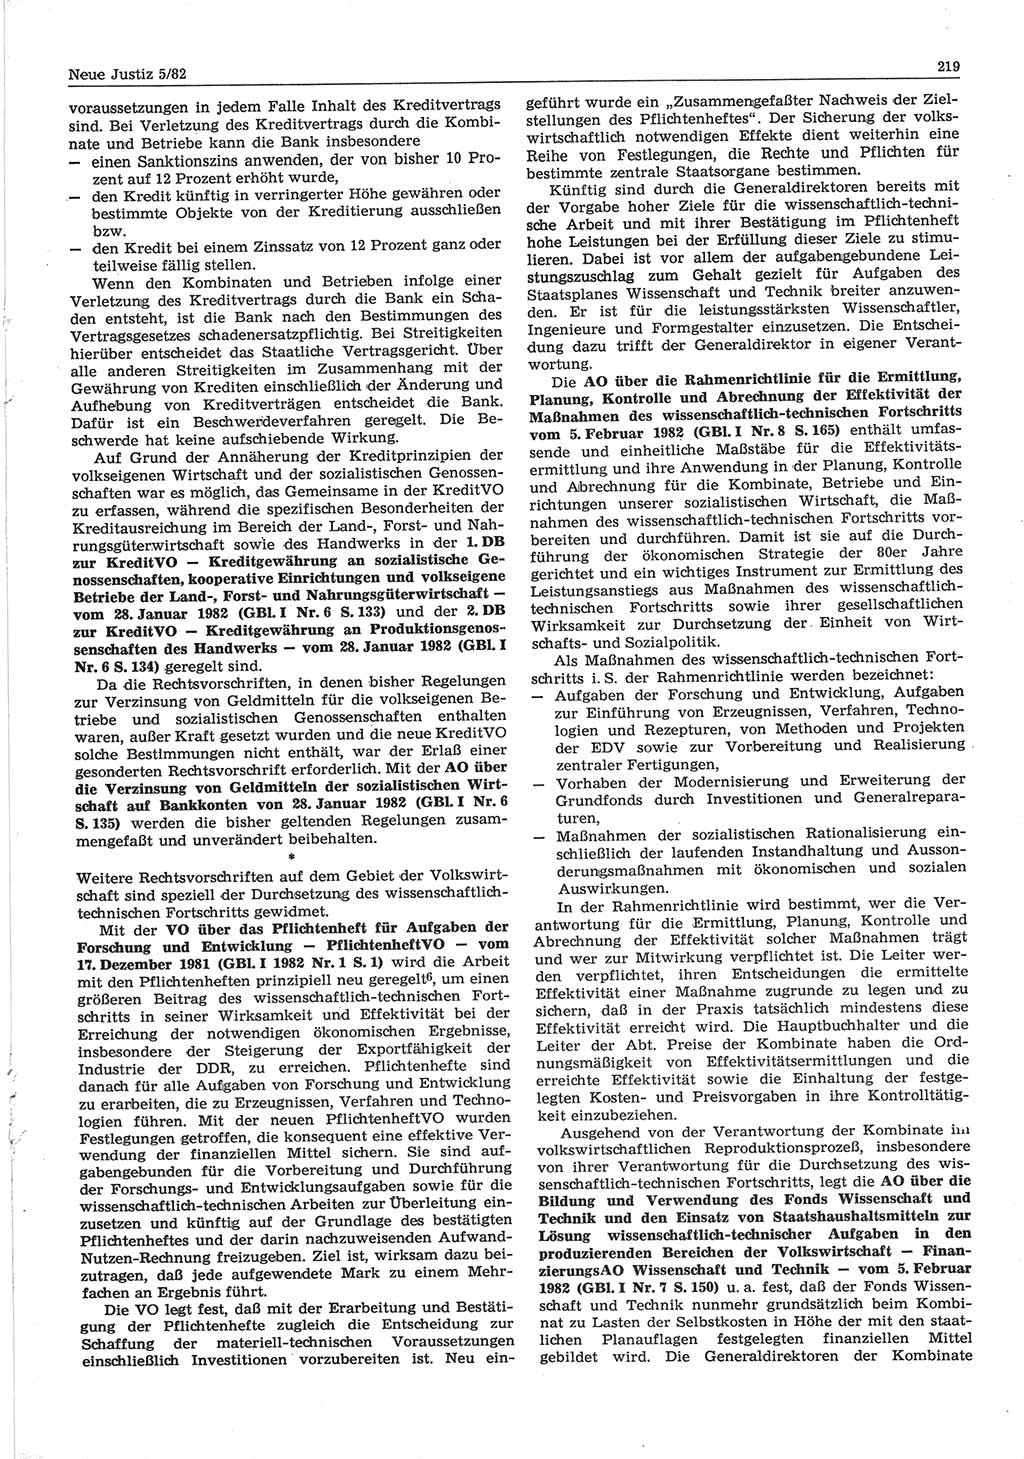 Neue Justiz (NJ), Zeitschrift für sozialistisches Recht und Gesetzlichkeit [Deutsche Demokratische Republik (DDR)], 36. Jahrgang 1982, Seite 219 (NJ DDR 1982, S. 219)